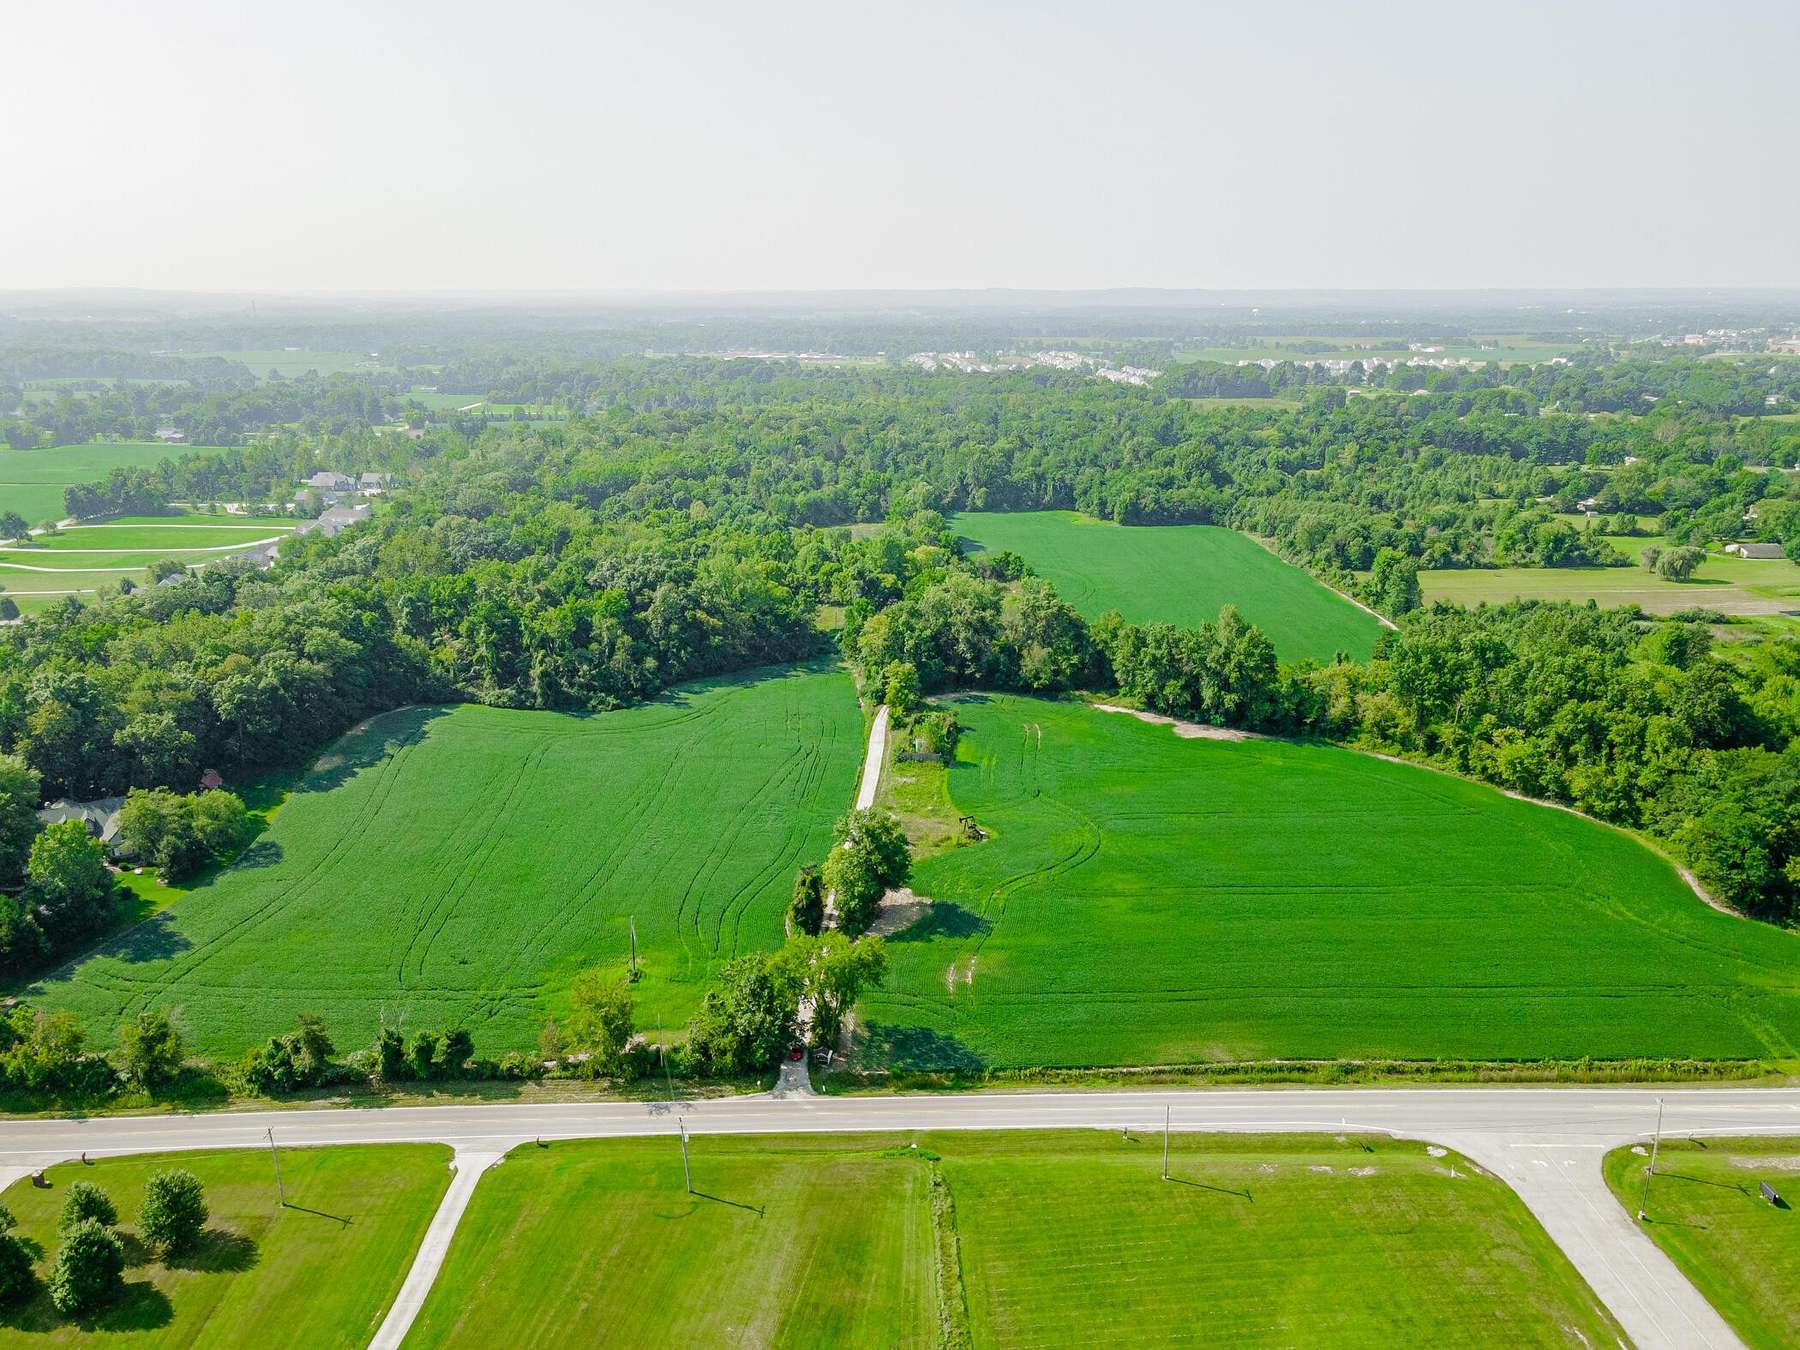 60.6 Acres of Land for Sale in Pickerington, Ohio